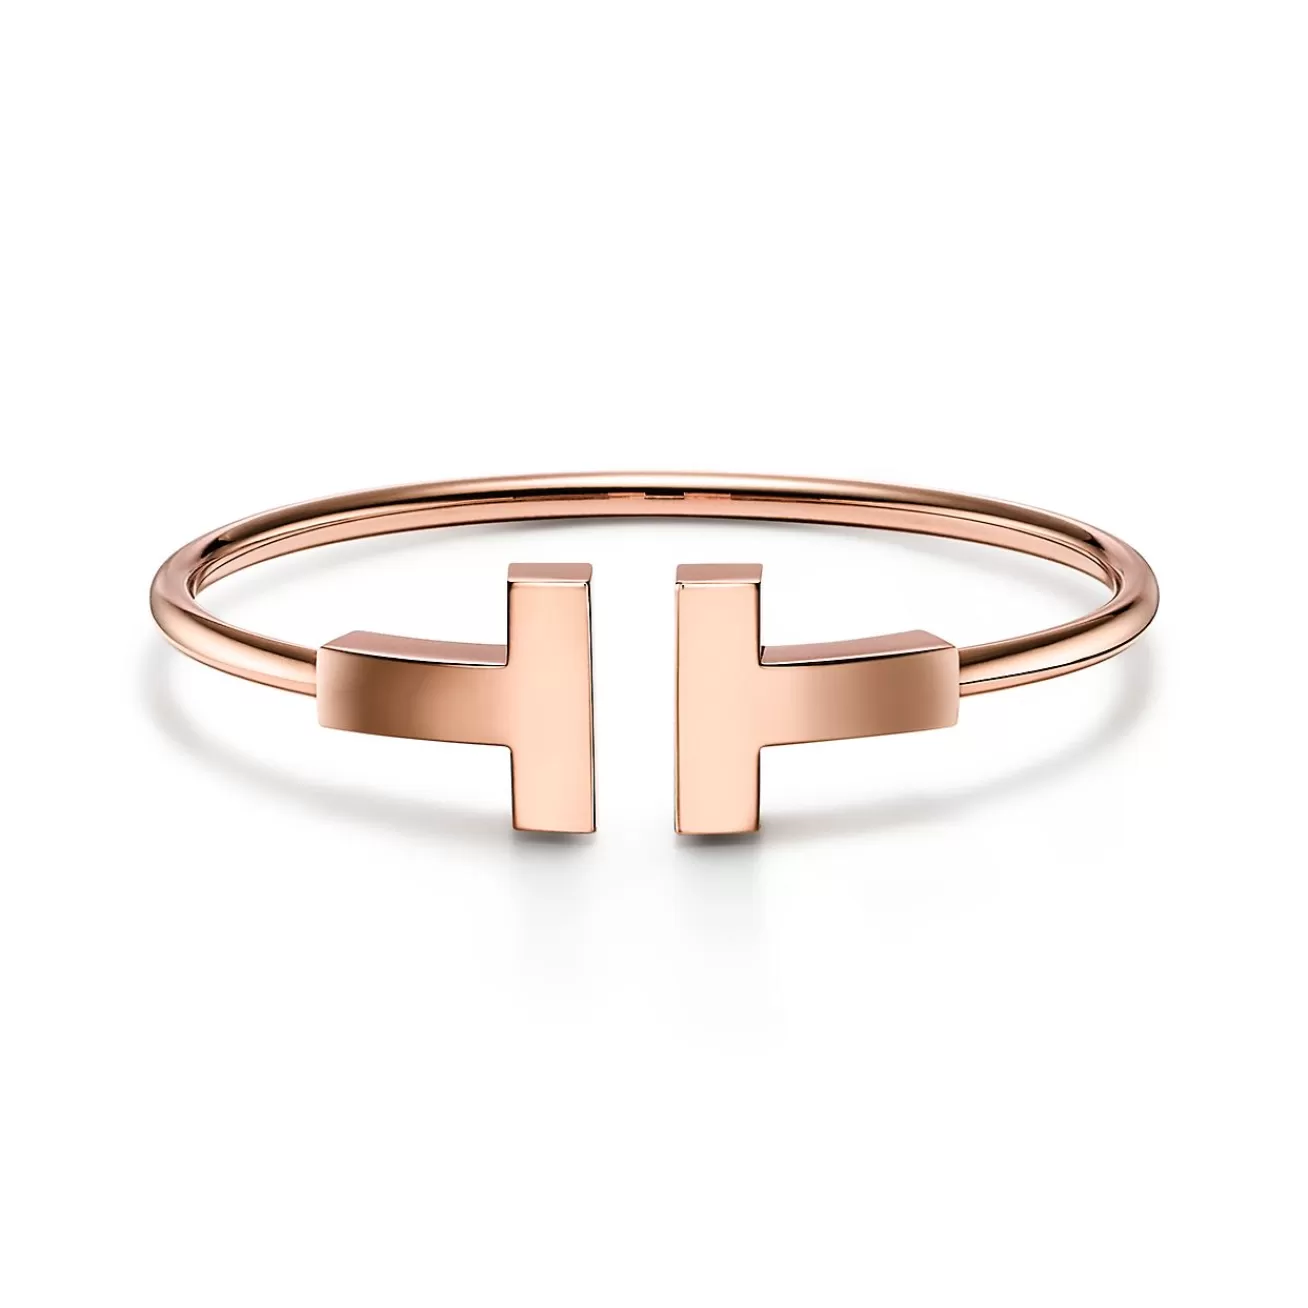 Tiffany & Co. Tiffany T wide wire bracelet in 18k rose gold, medium. | ^ Bracelets | Men's Jewelry